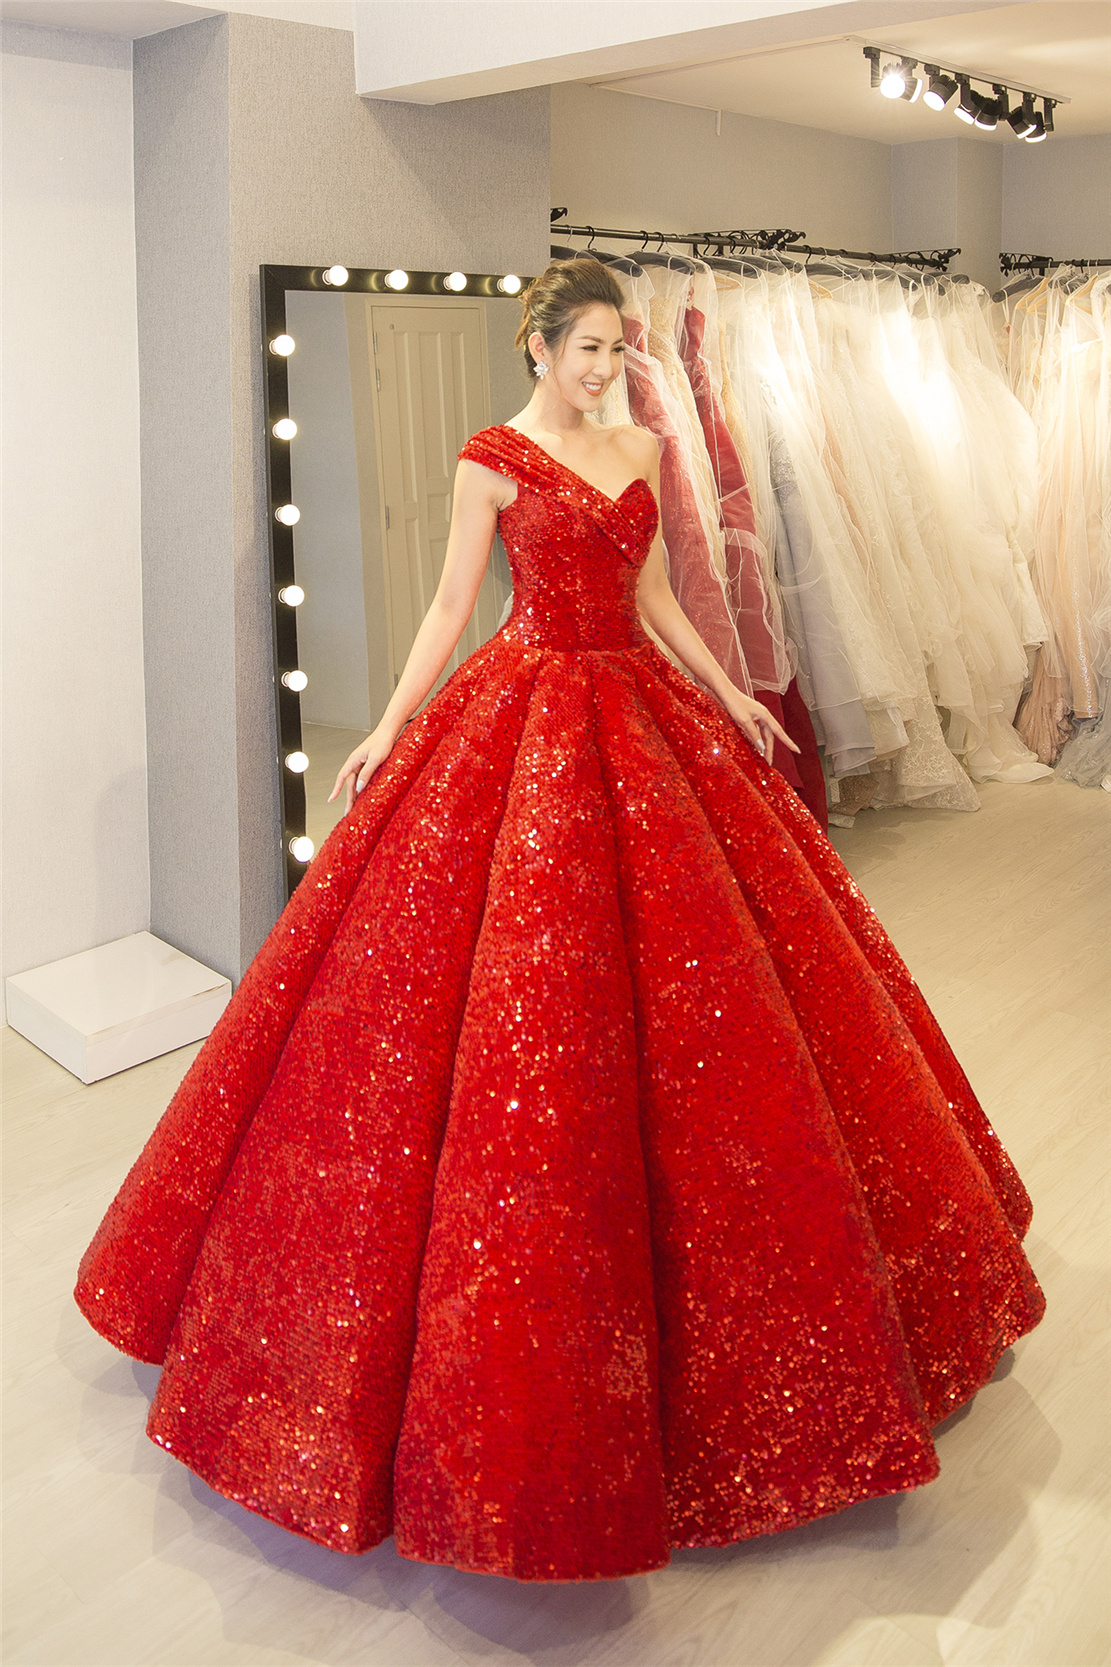 Thiết kế váy cưới màu đỏ nổi bật